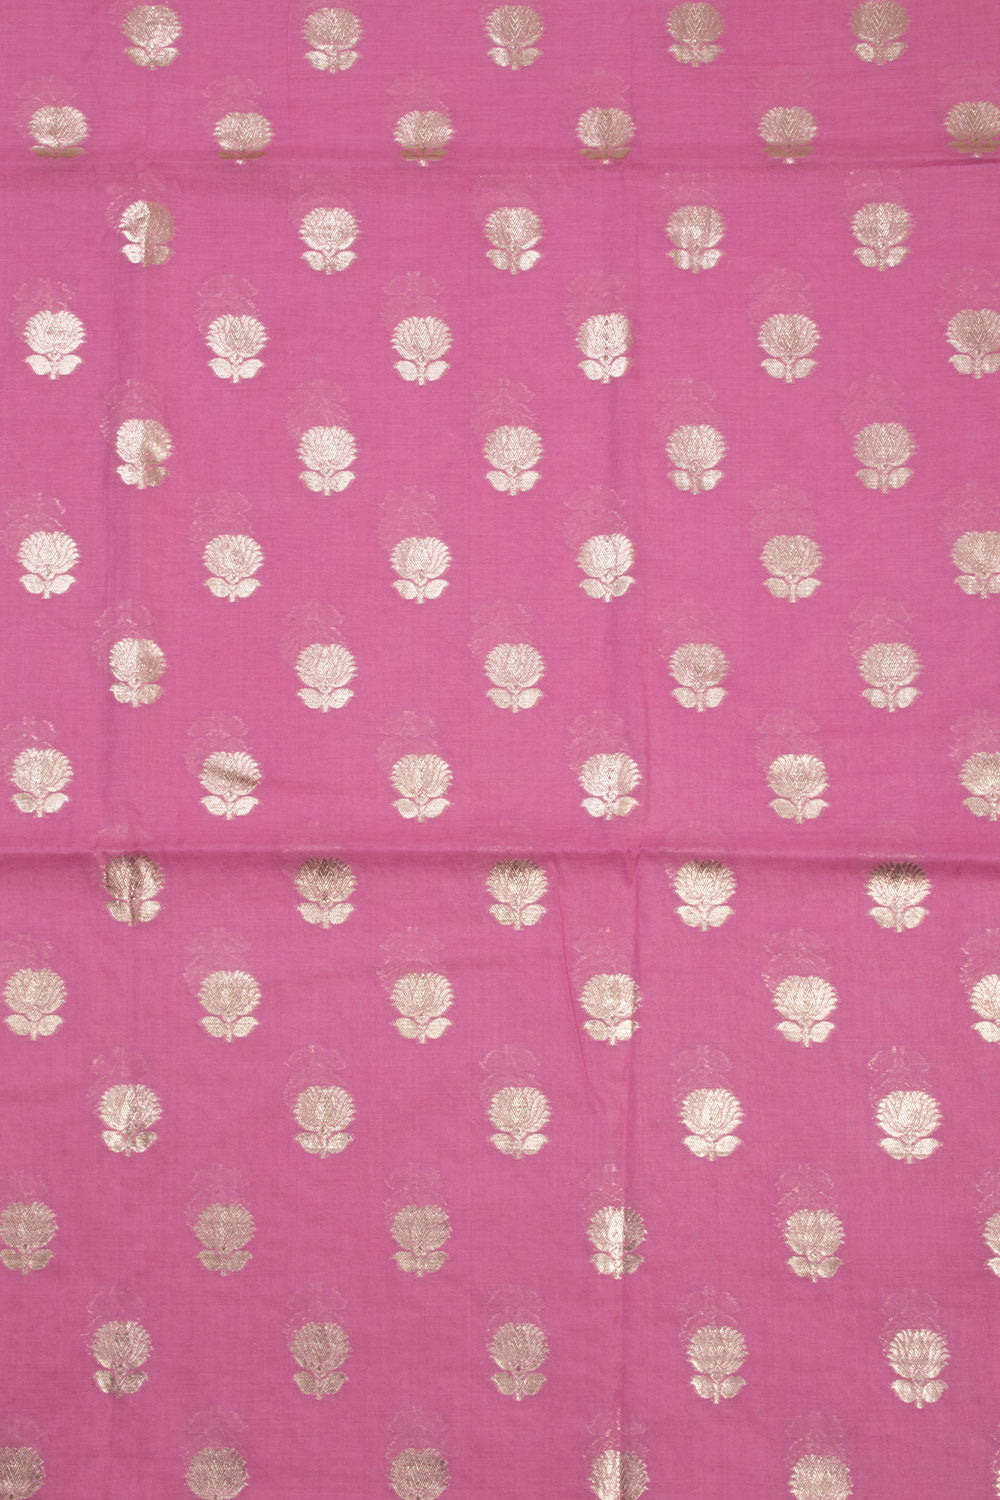 Onion pink 3-piece Banarasi Silk Salwar Suit Material 10070356